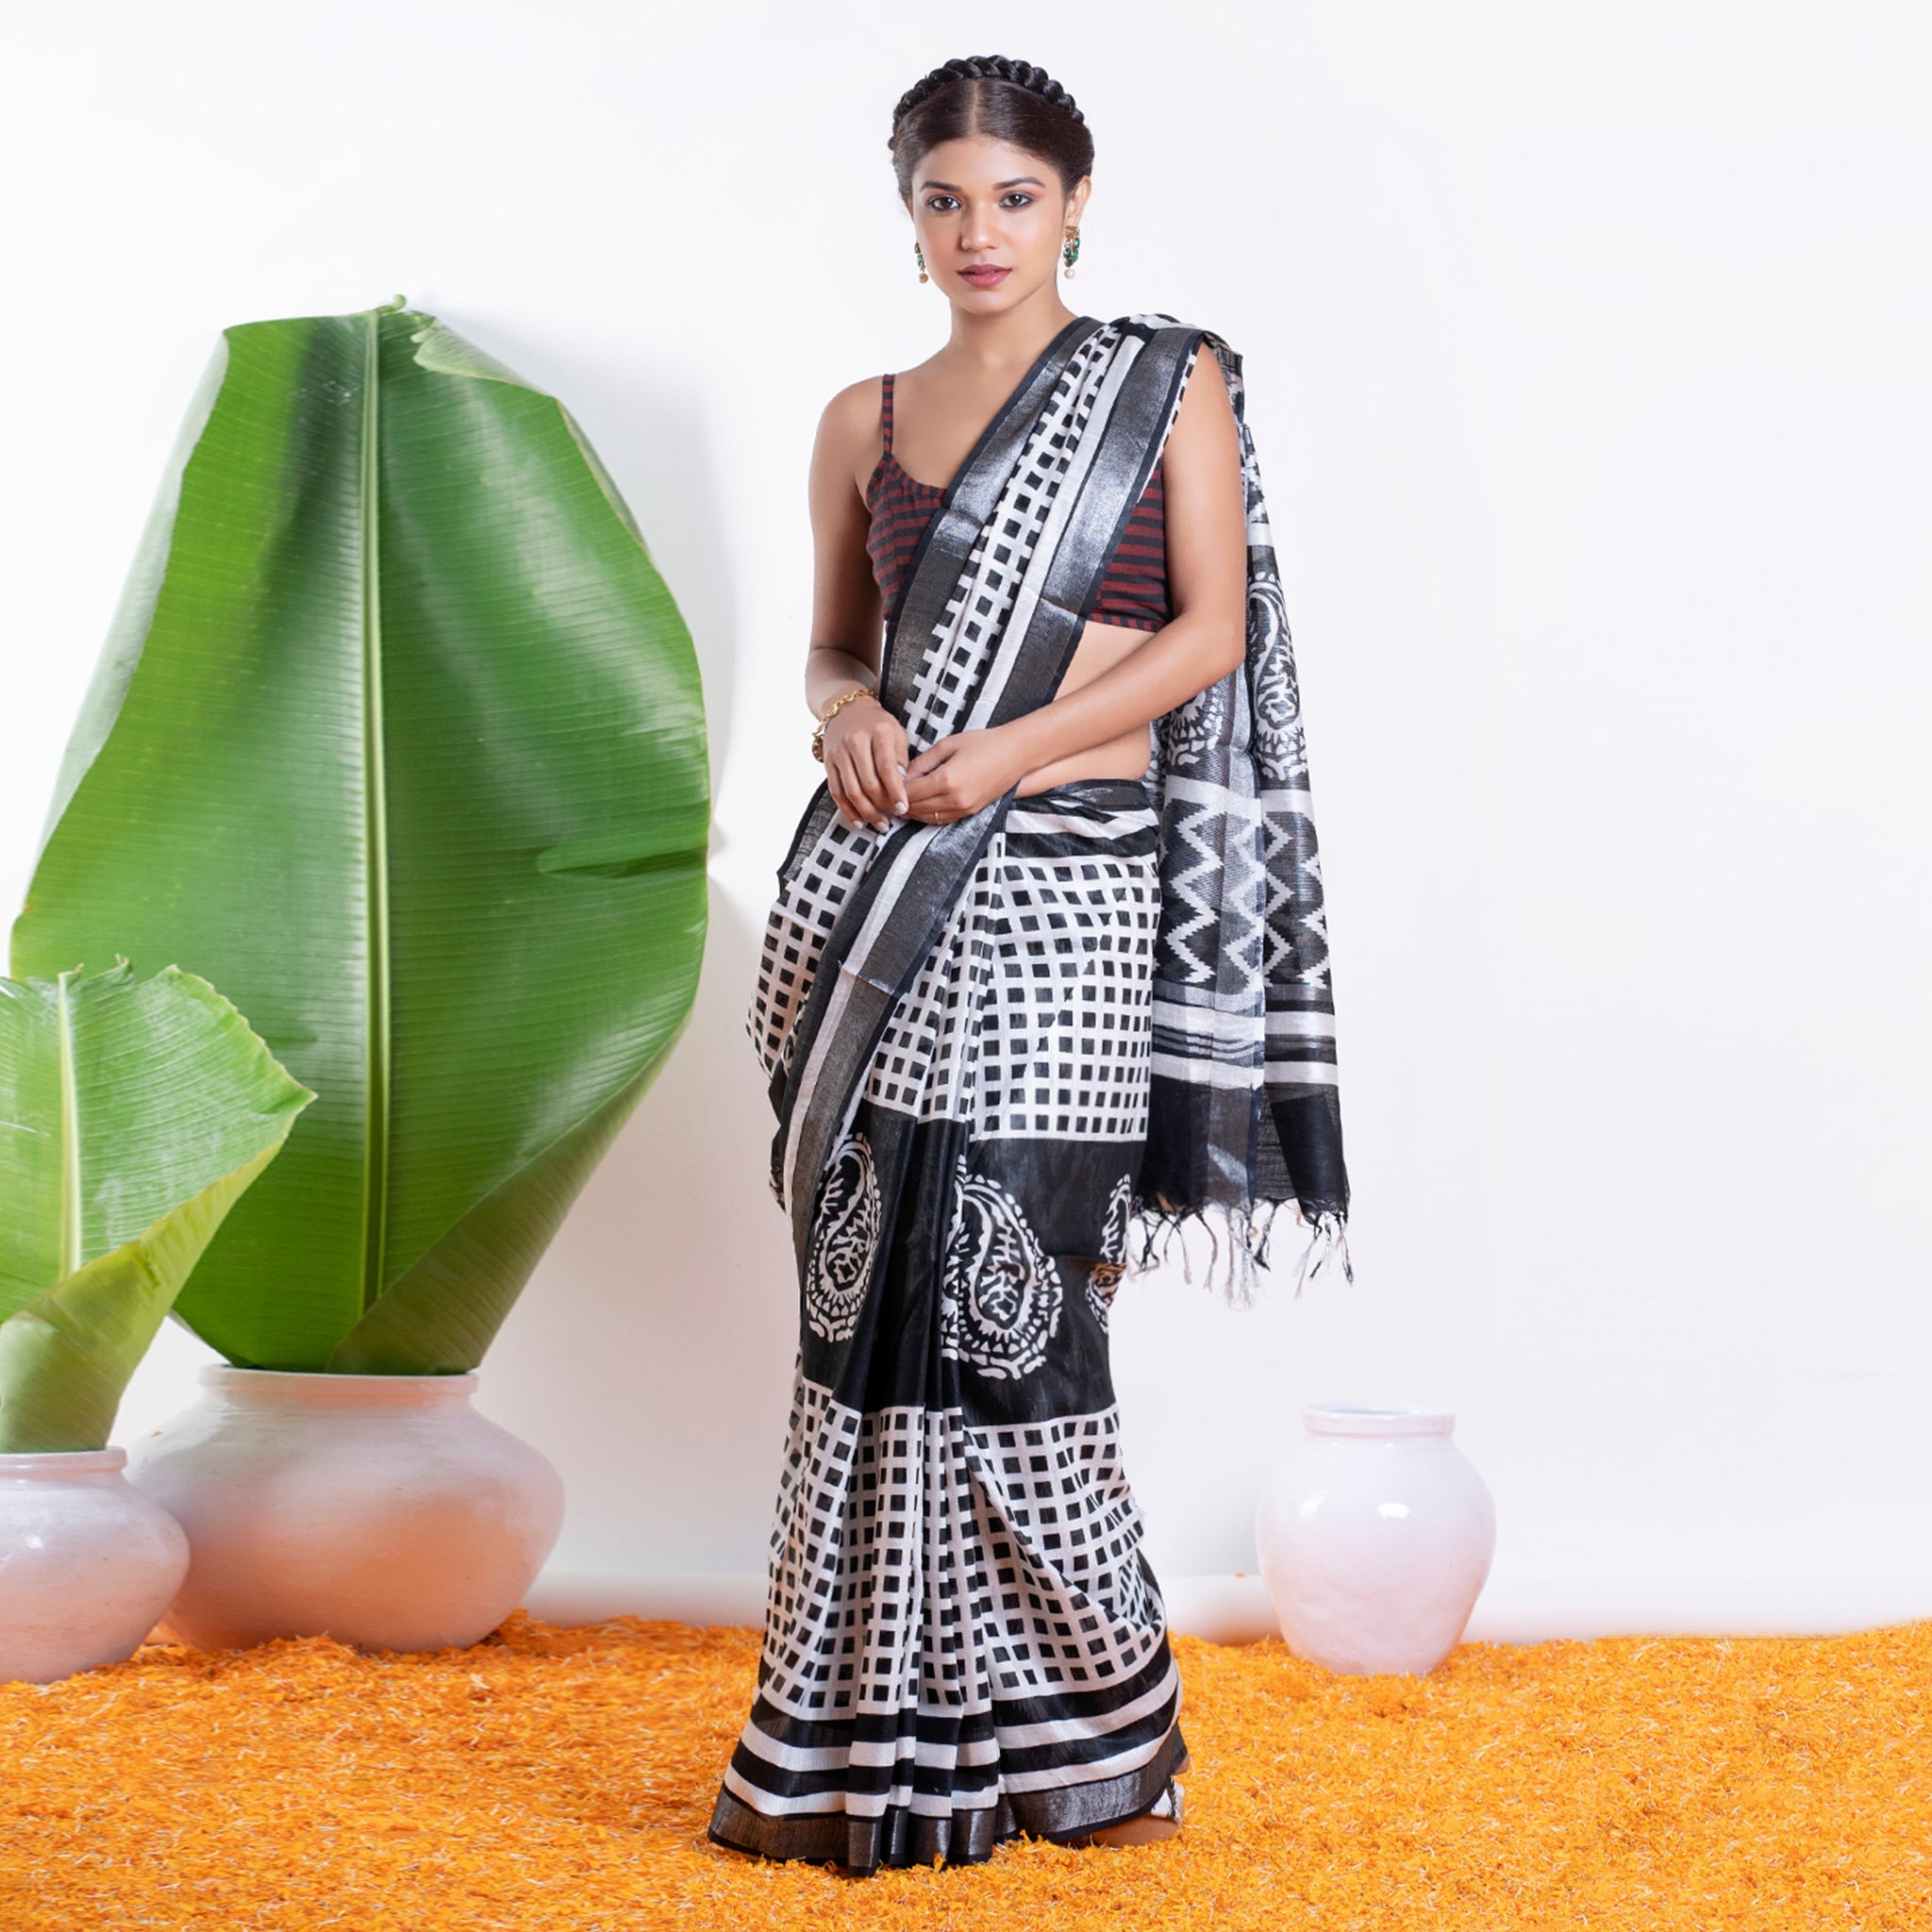 Share 180+ white sambalpuri saree latest